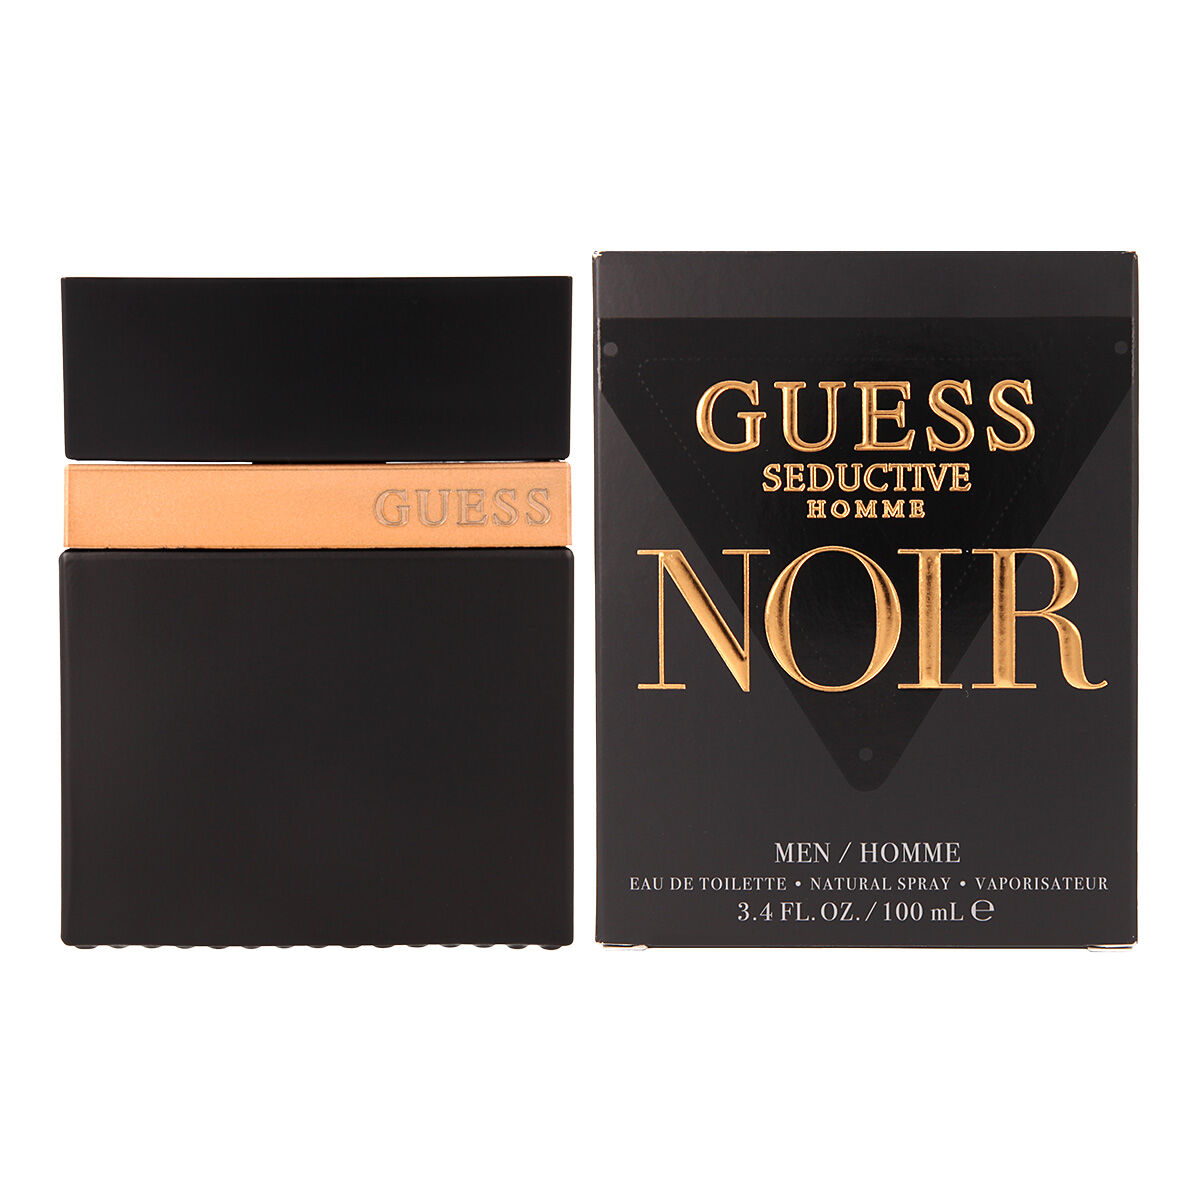 Parfum Bărbați Guess EDT Seductive Noir Homme (100 ml)